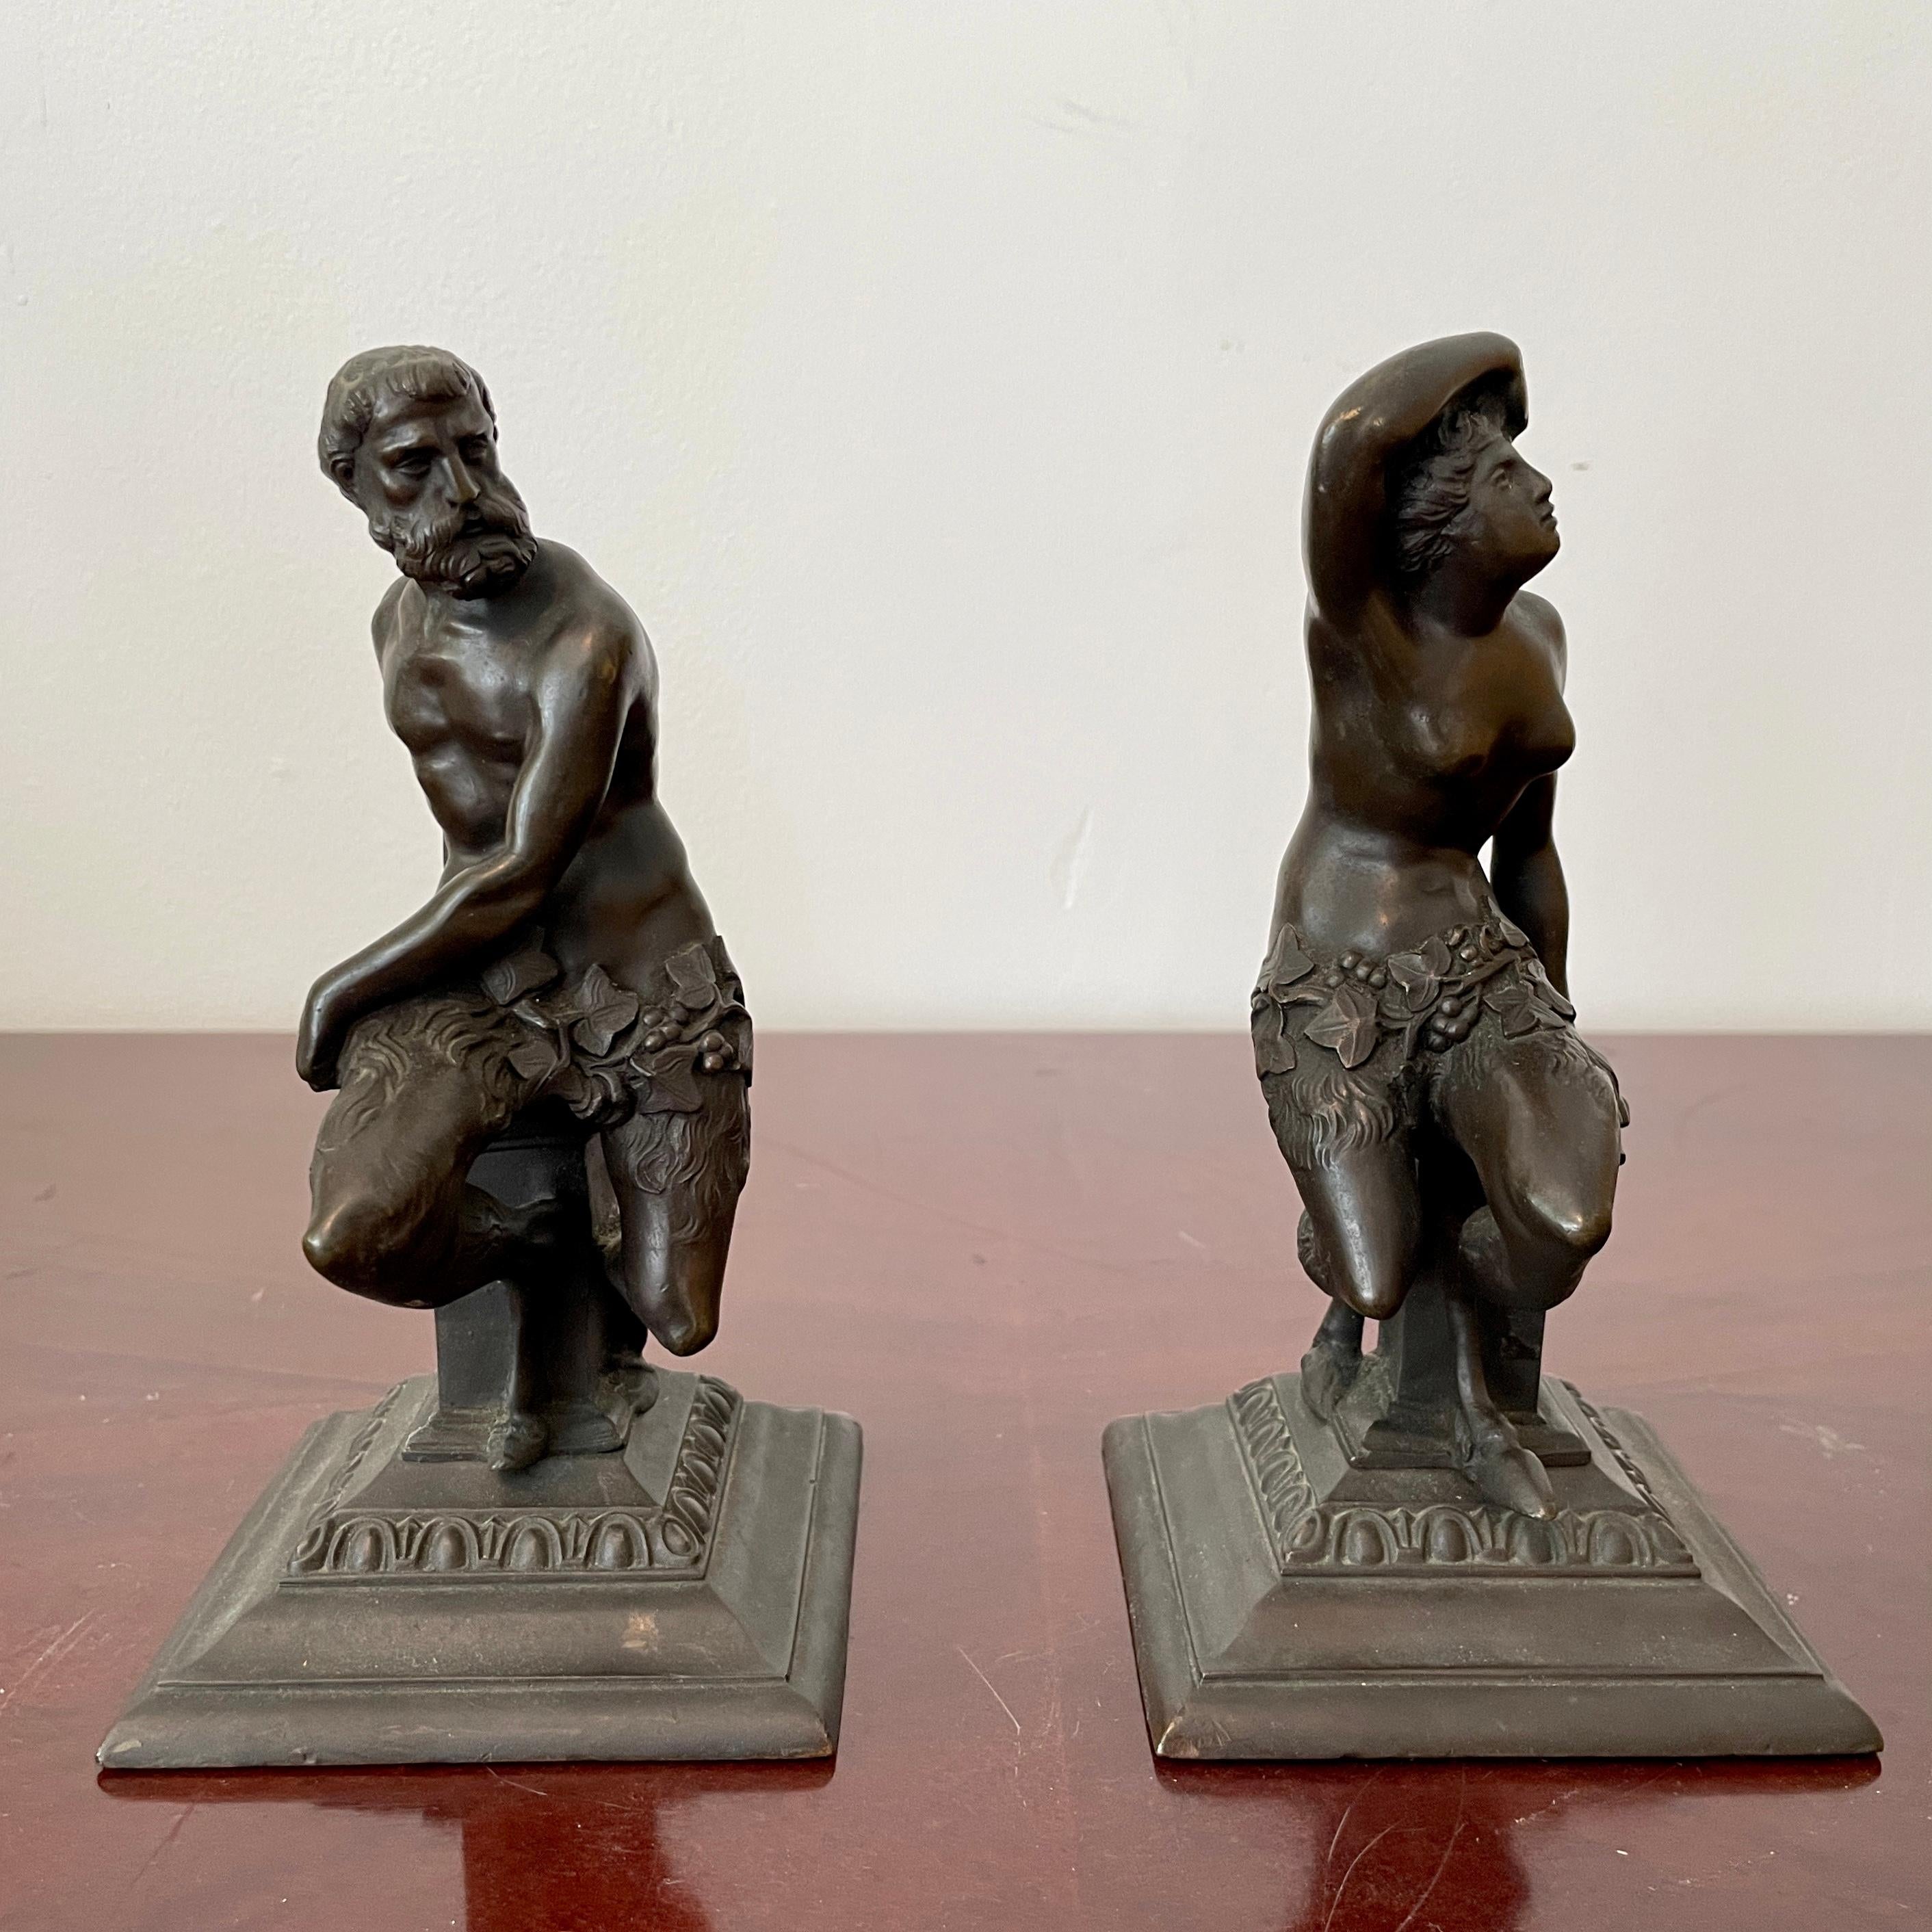 Paire classique de figurines en bronze représentant un homme et une femme. Un excellent complément à vos intérieurs d'inspiration classique.